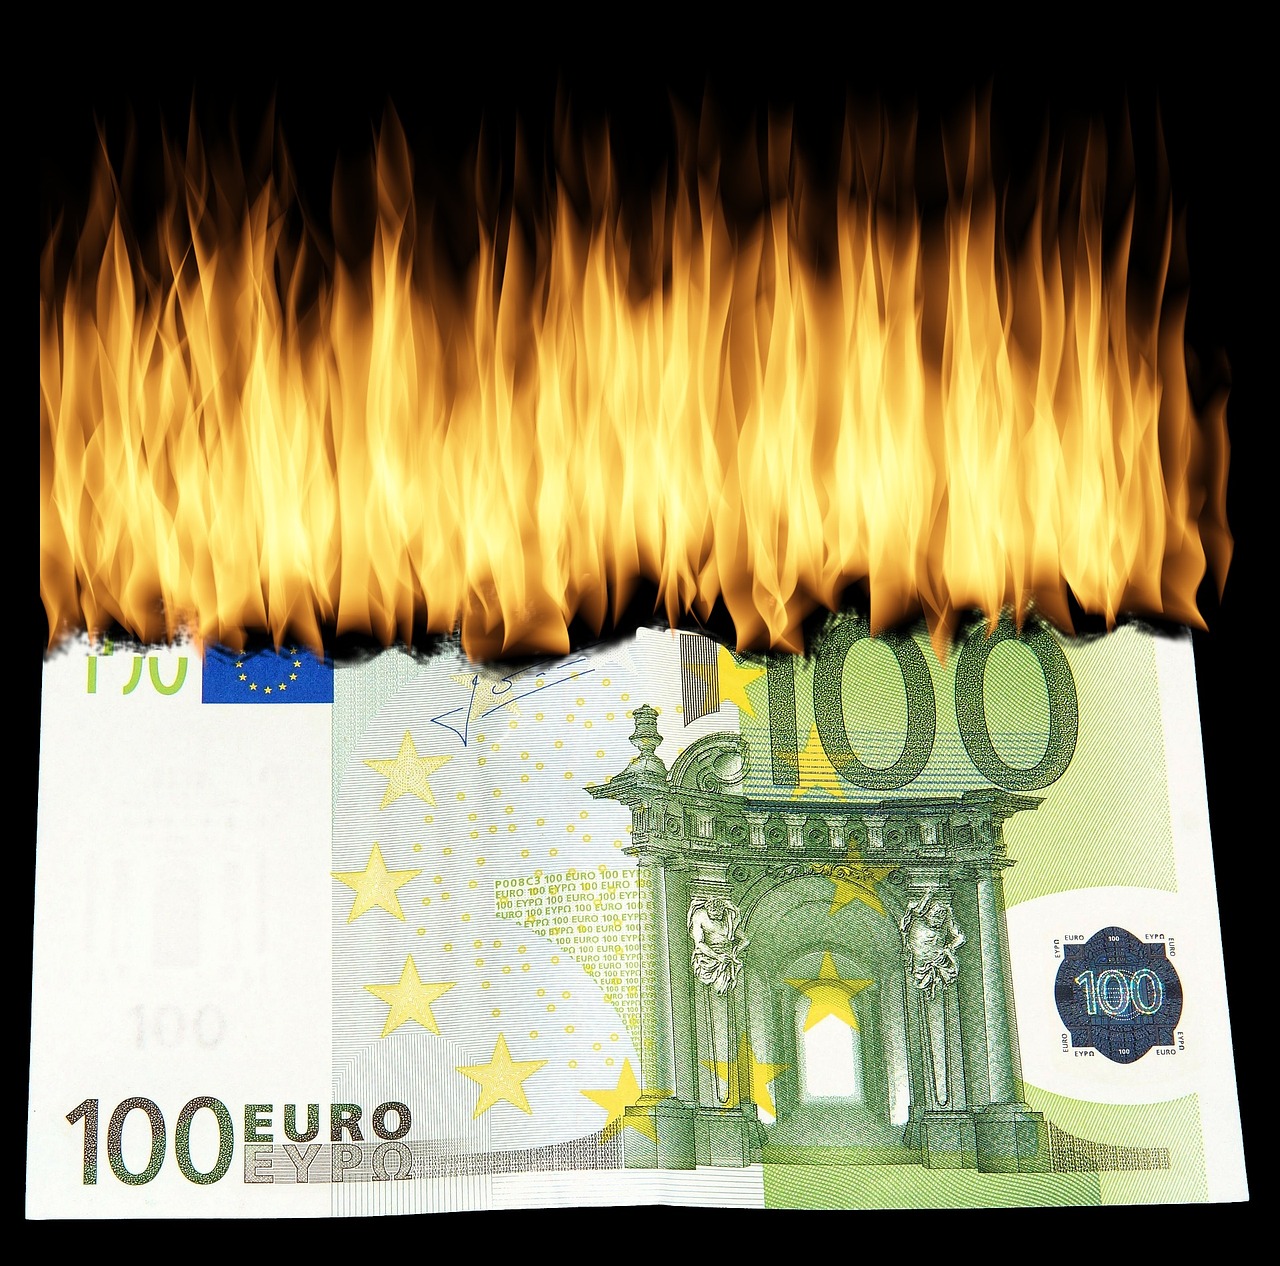 Burning, Money